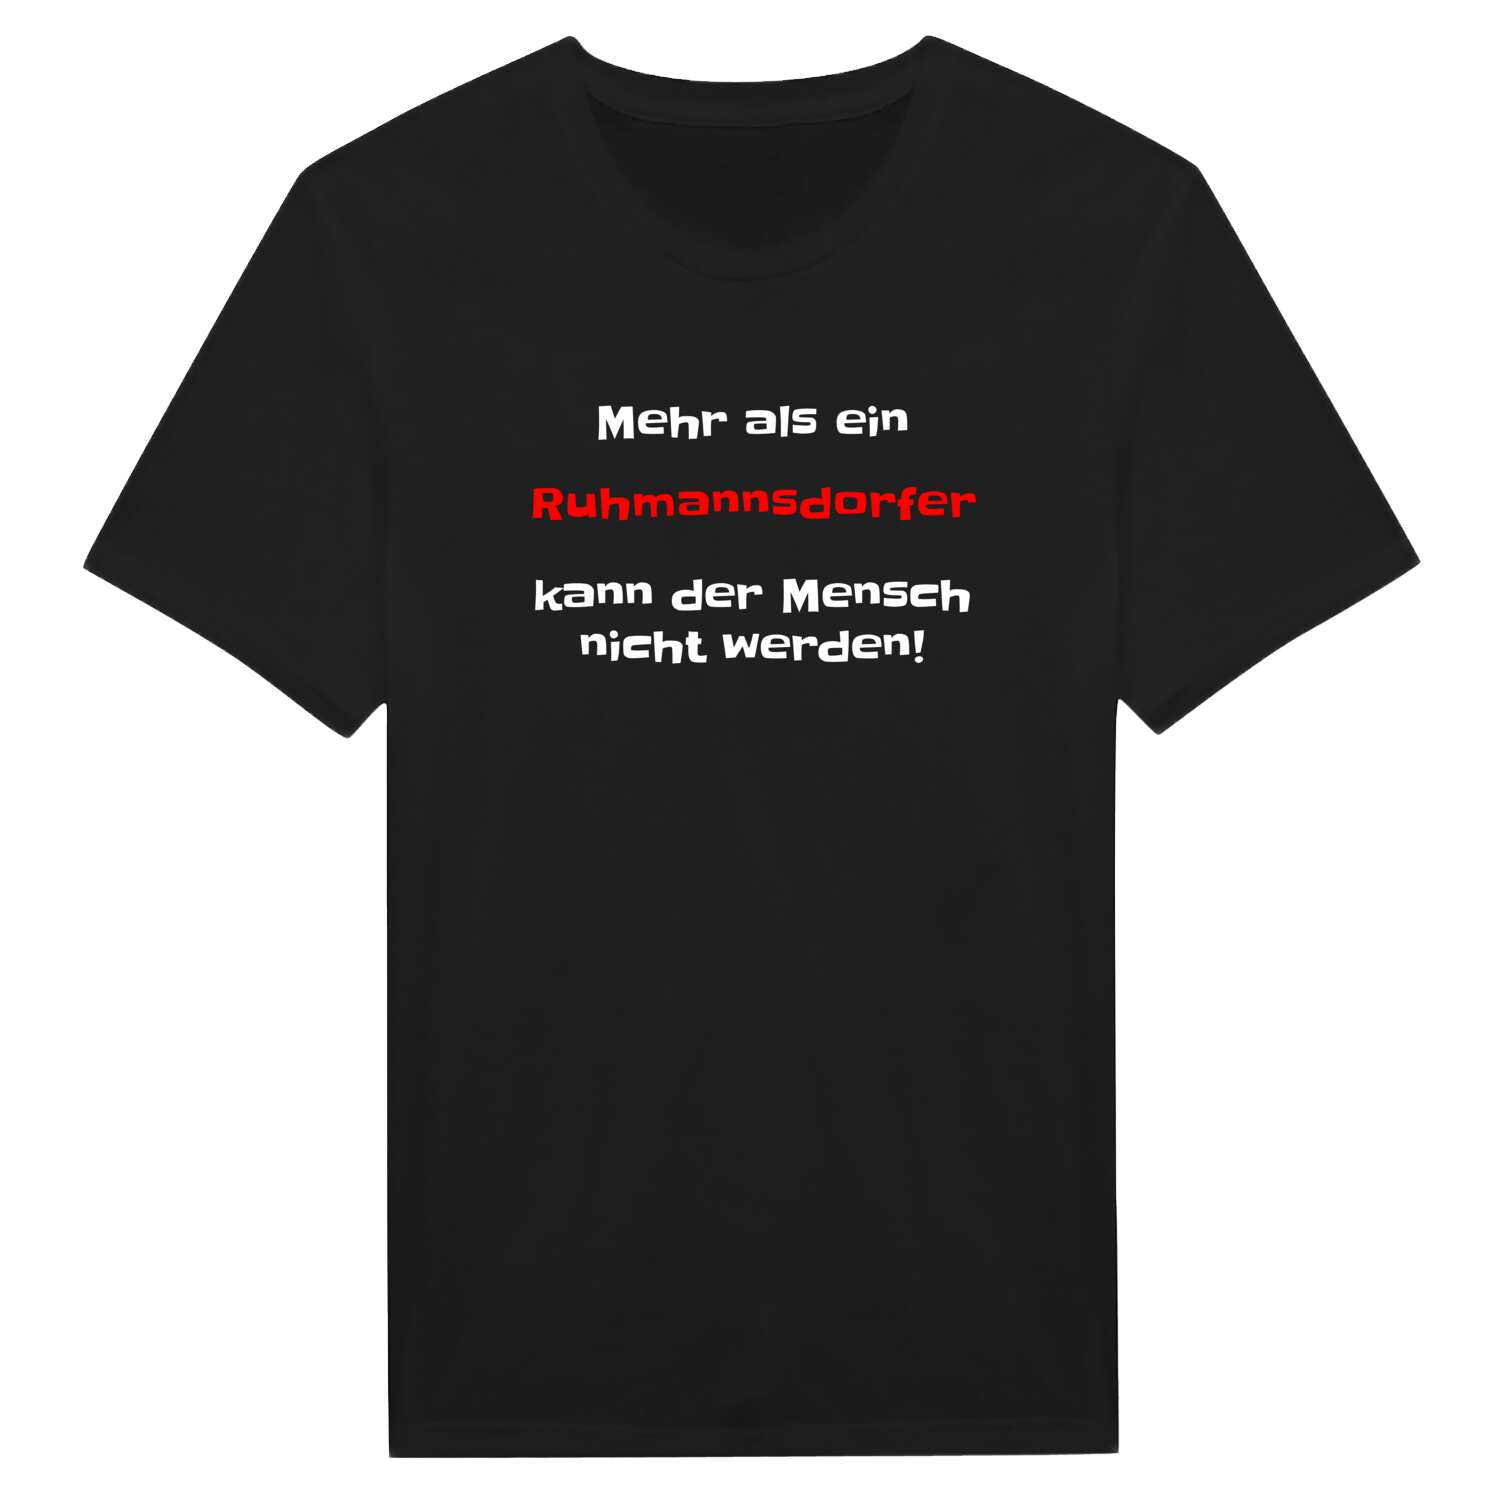 Ruhmannsdorf T-Shirt »Mehr als ein«